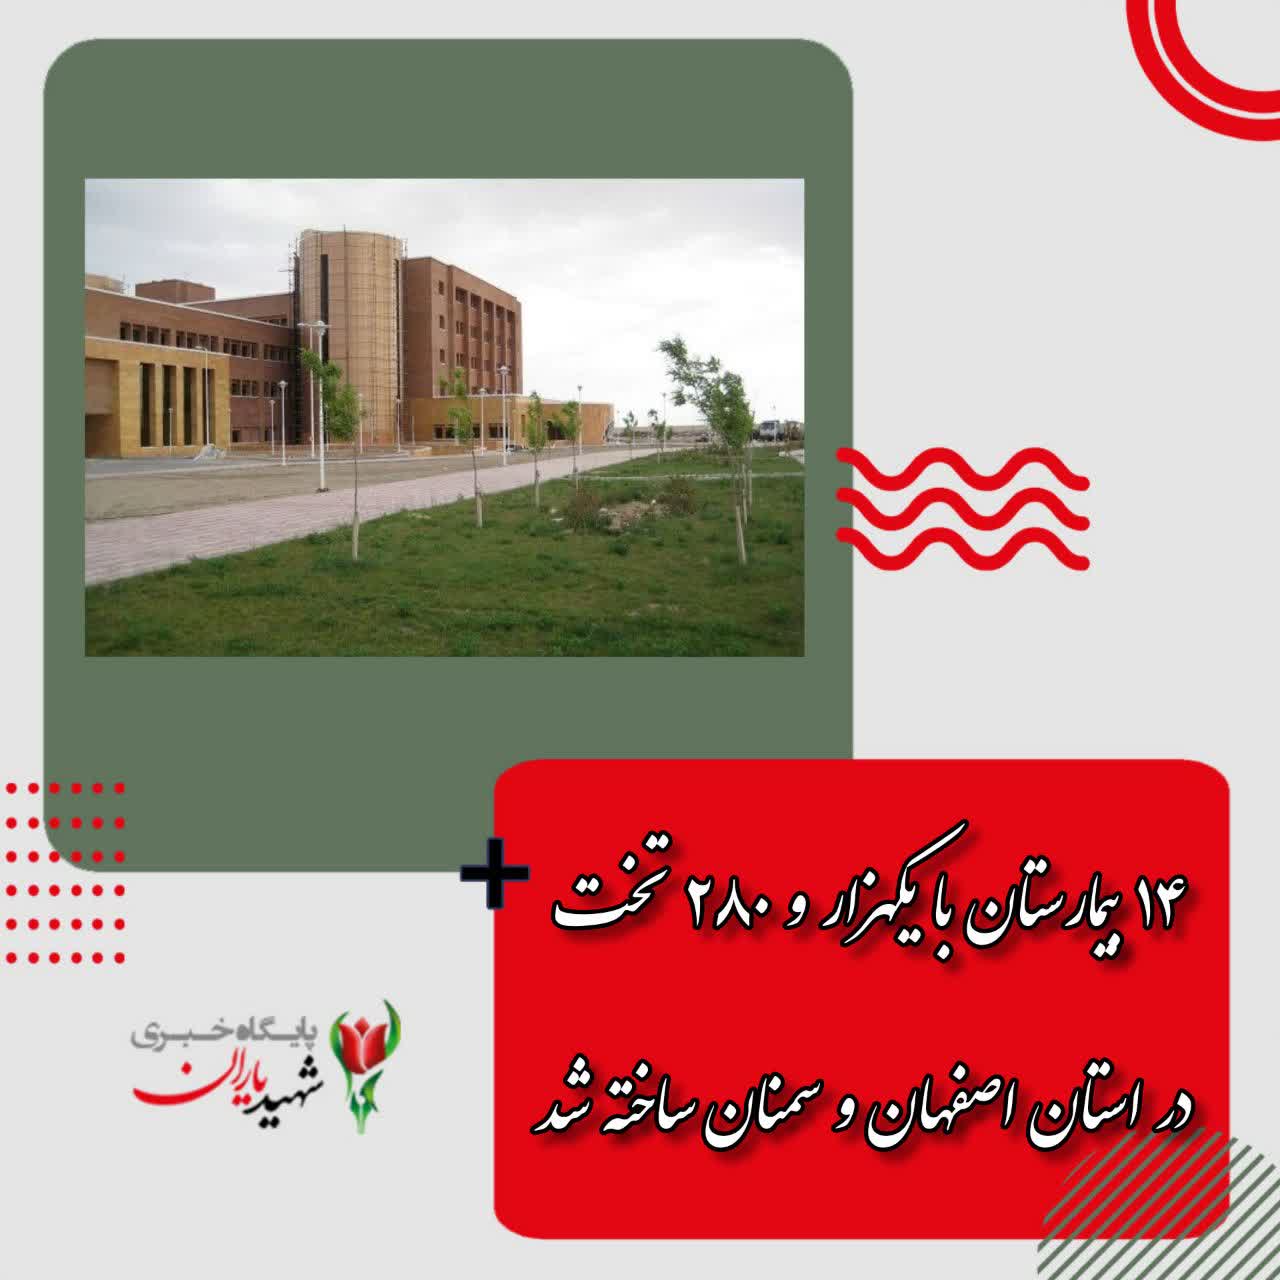 ۱۴ بیمارستان با یکهزار و ۲۸۰ تخت در استان اصفهان و سمنان ساخته شد